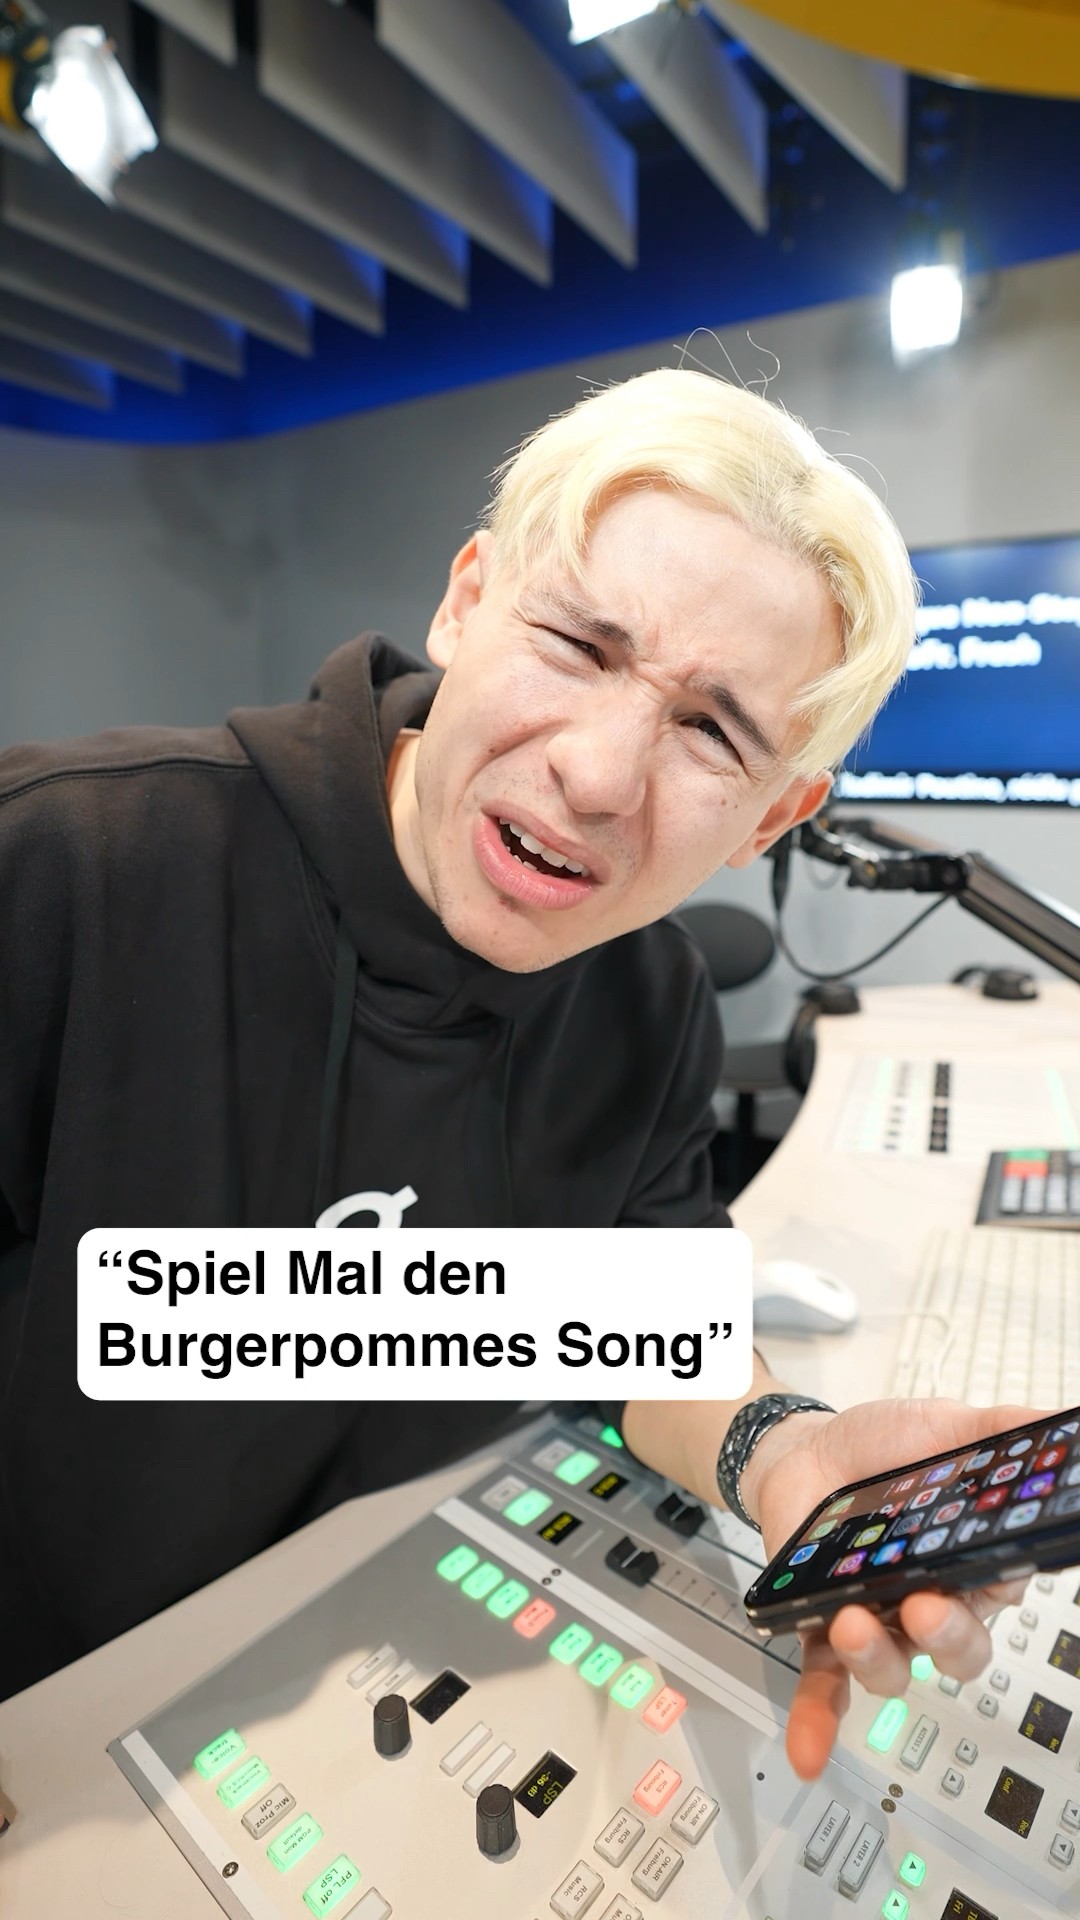 BURGERPOMMES SONG - LukasBS, iCrimax, MarvinVlogt, Kleiner Junge (Official Music Video)